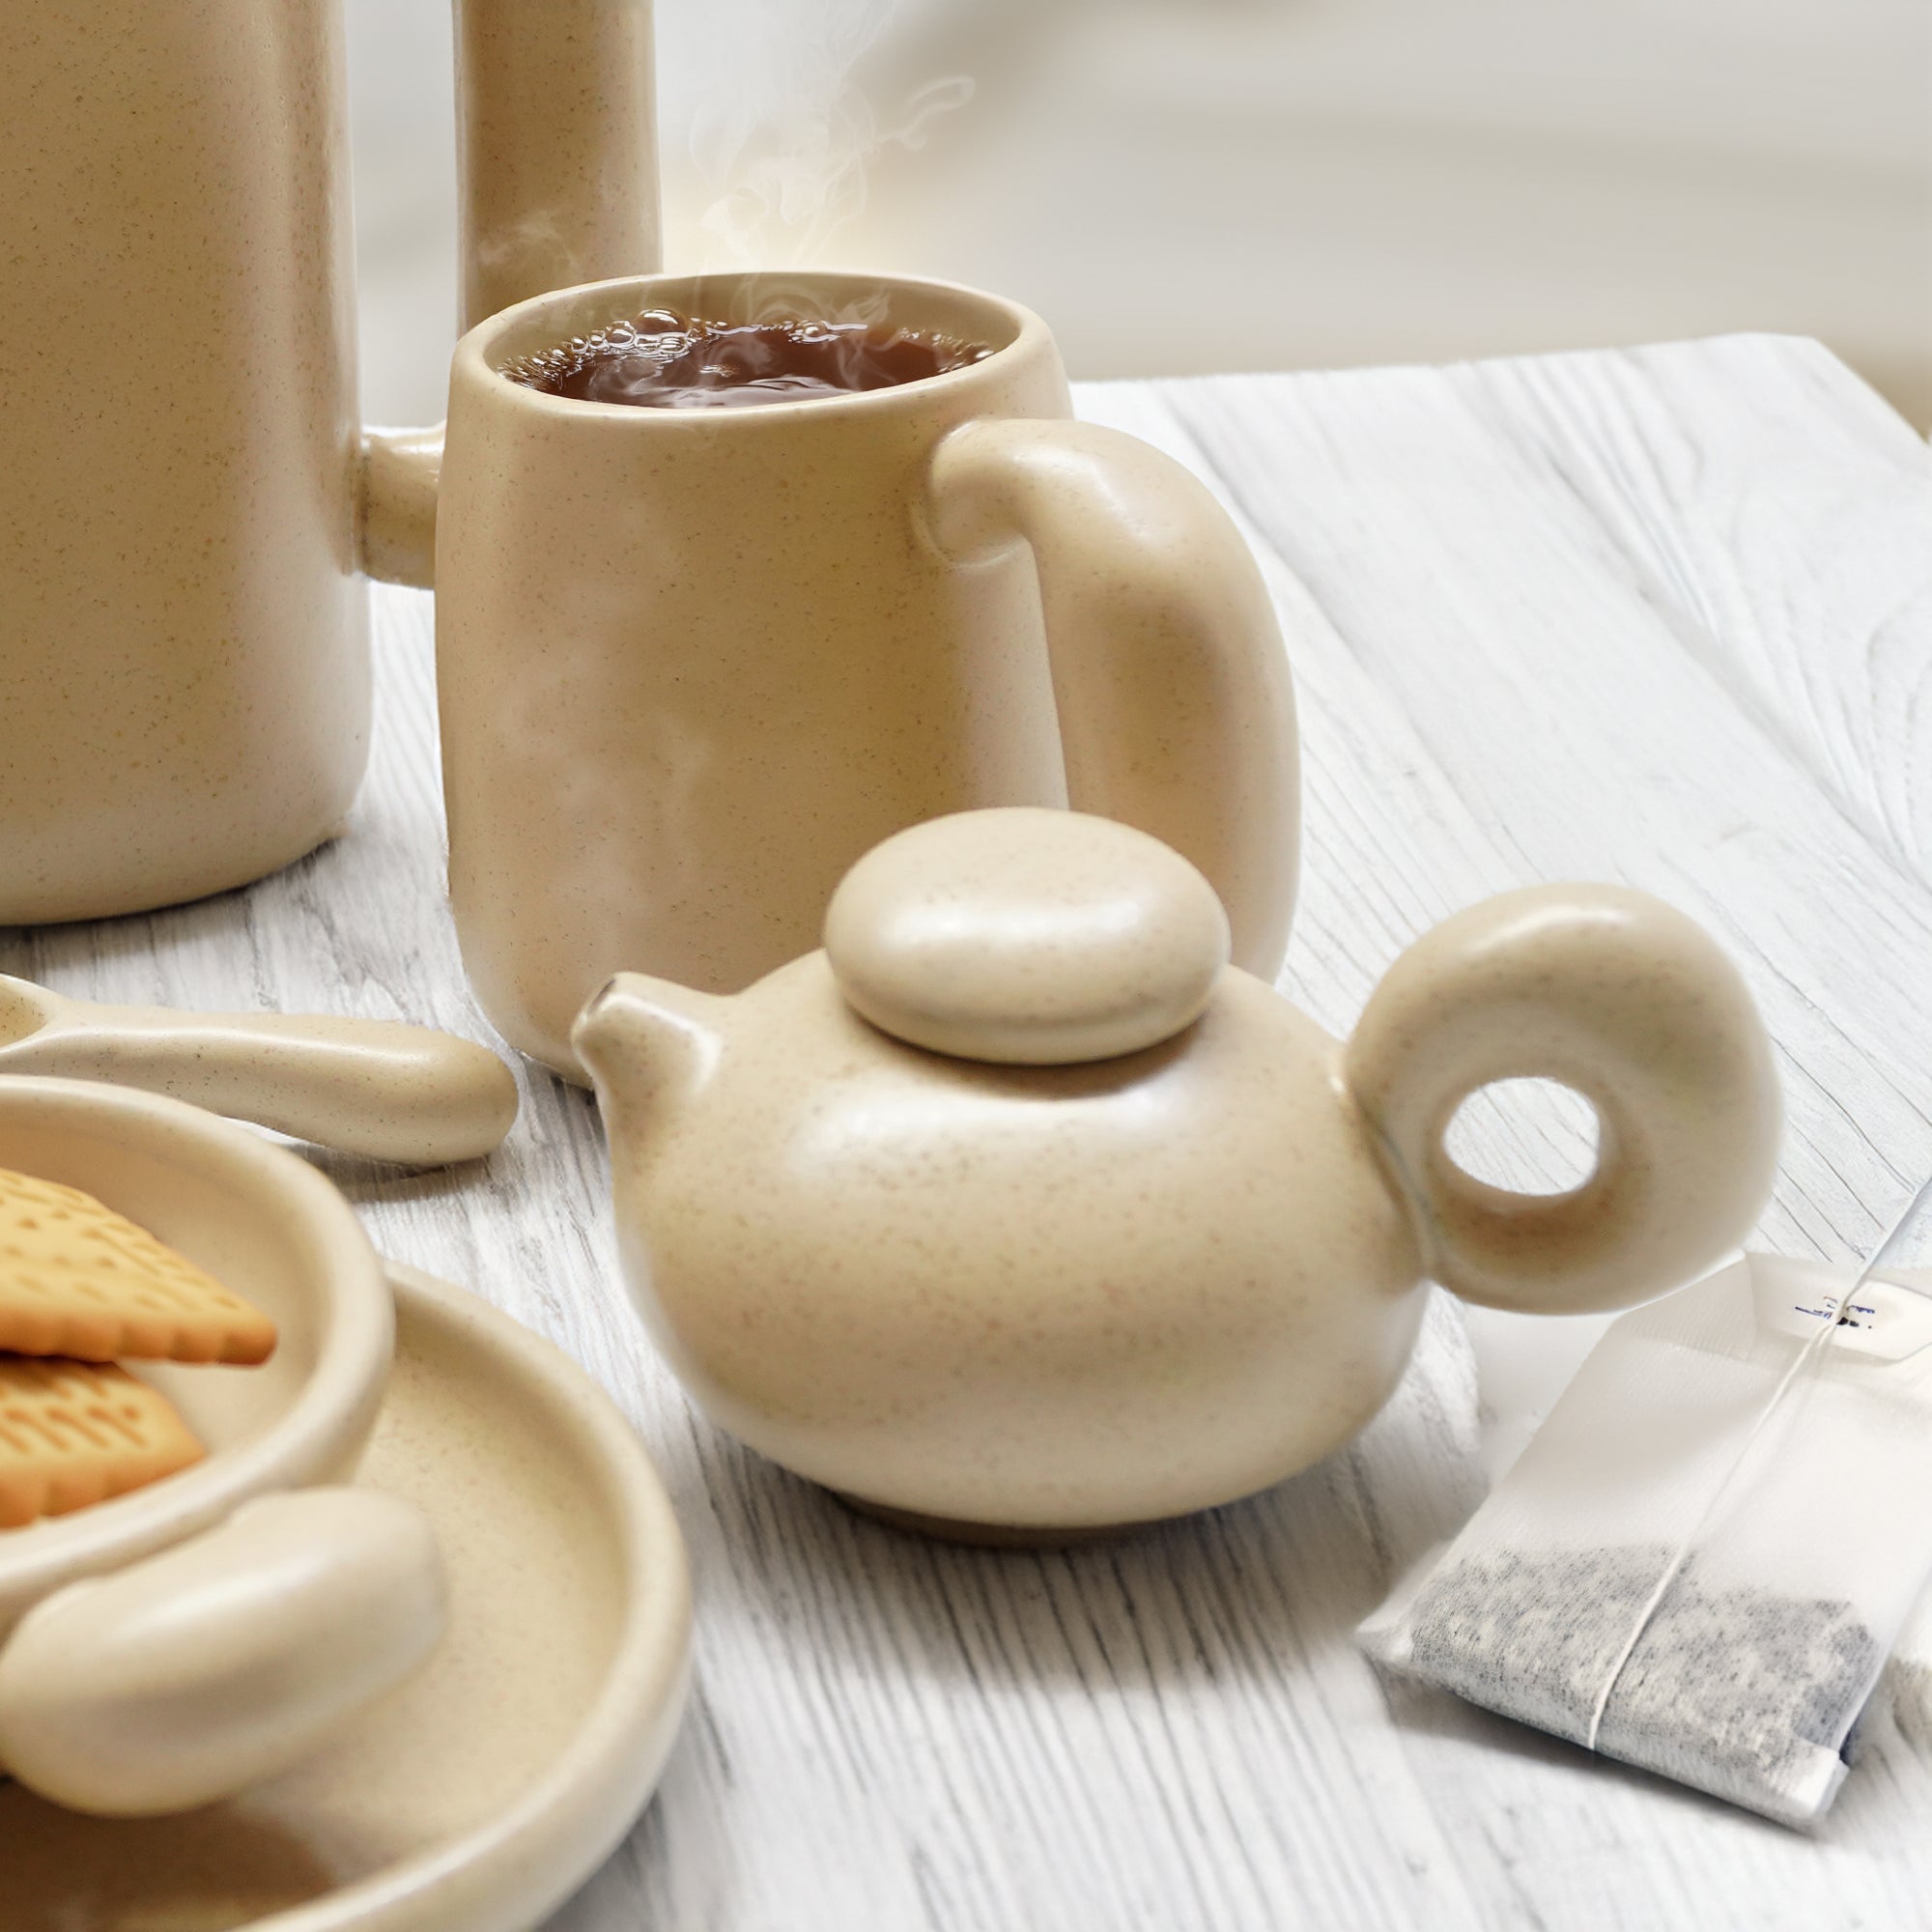 إبريق قهوة/شاي زن الآسيوي فقط E711-C-04197  Teapot Only